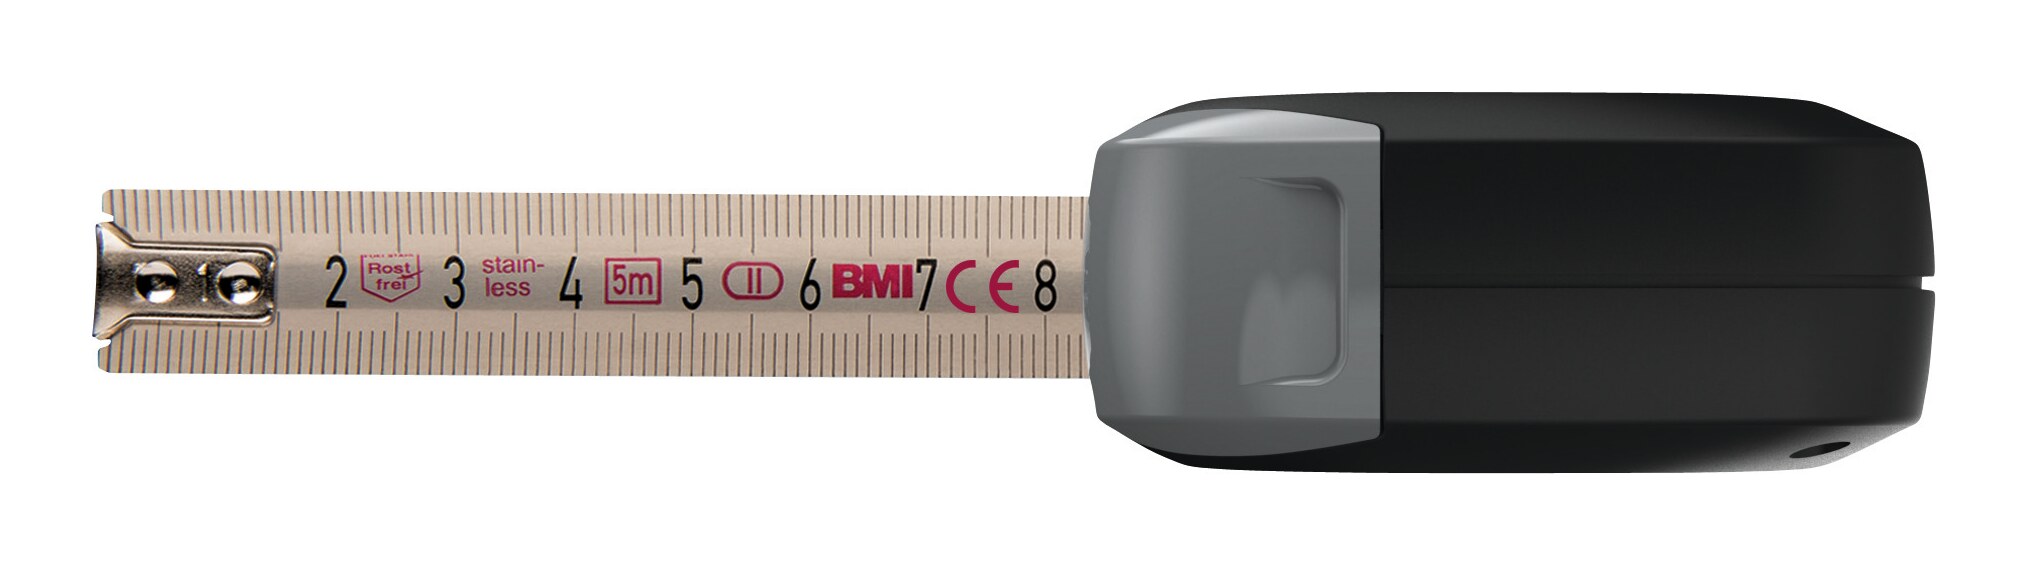 BMI Mètre ruban de poche Vario 411343120 - 3 m - En acier inoxydable